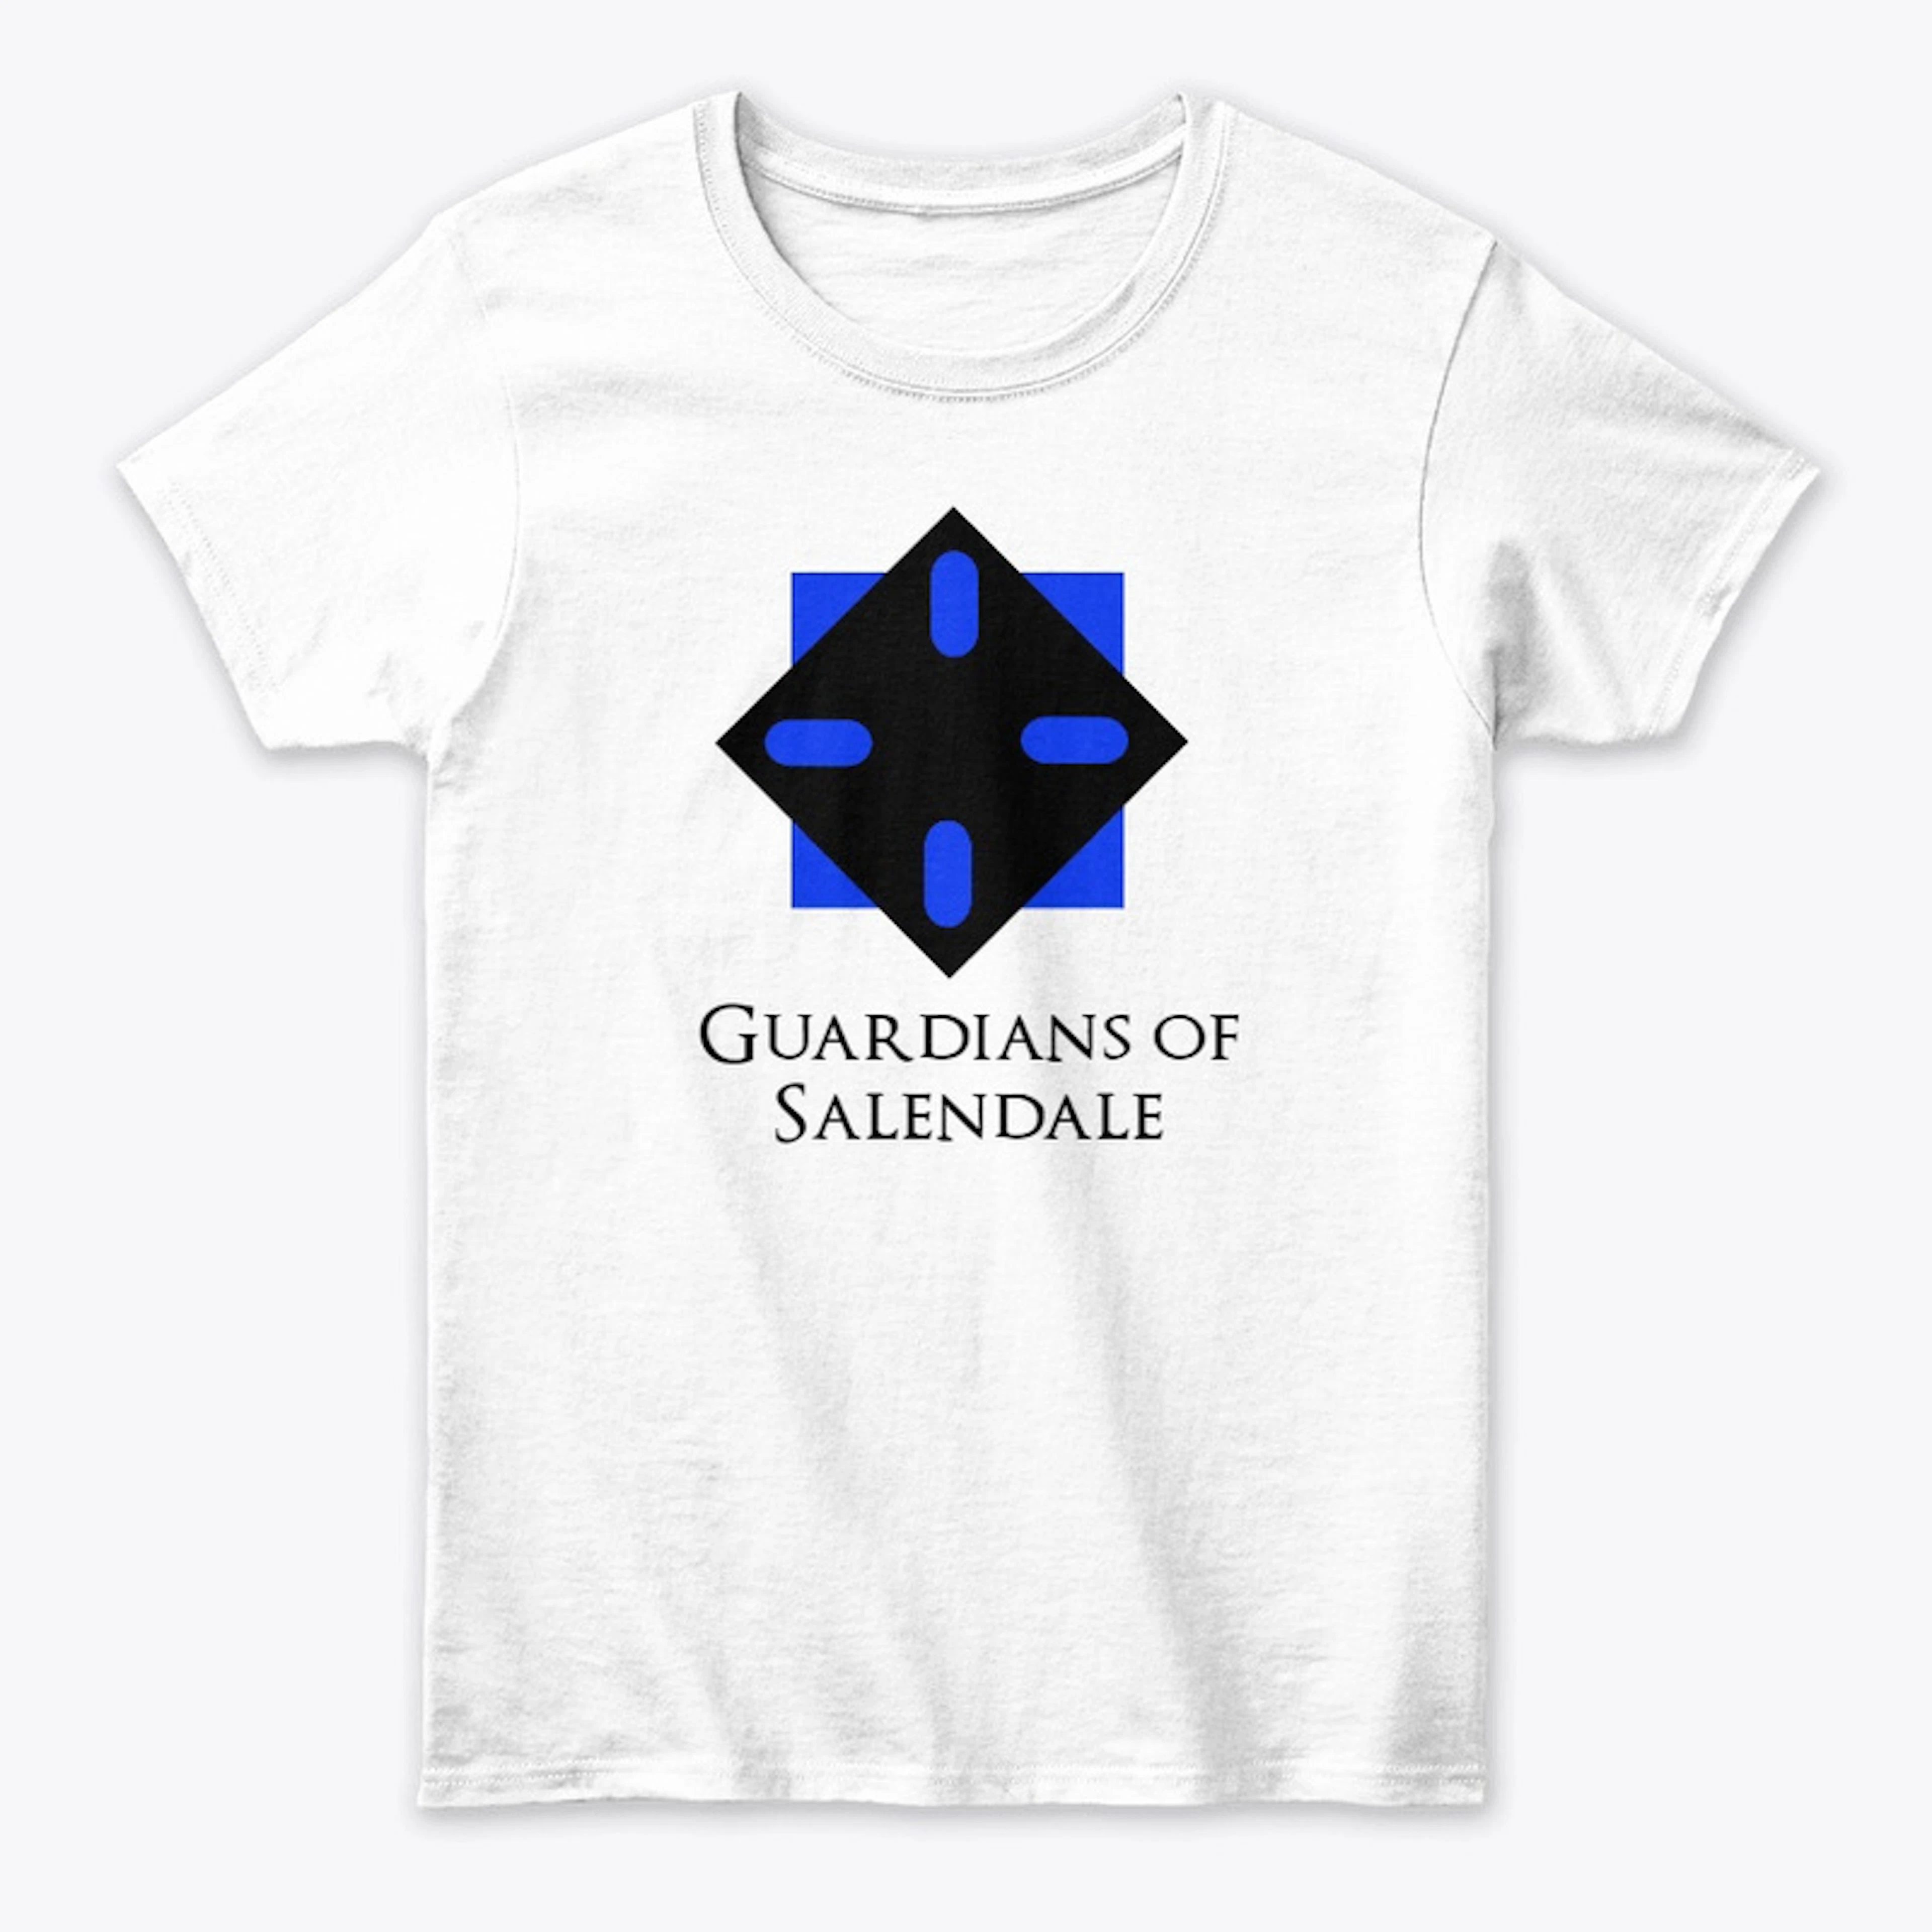 Guardians of Salendale (transparent)